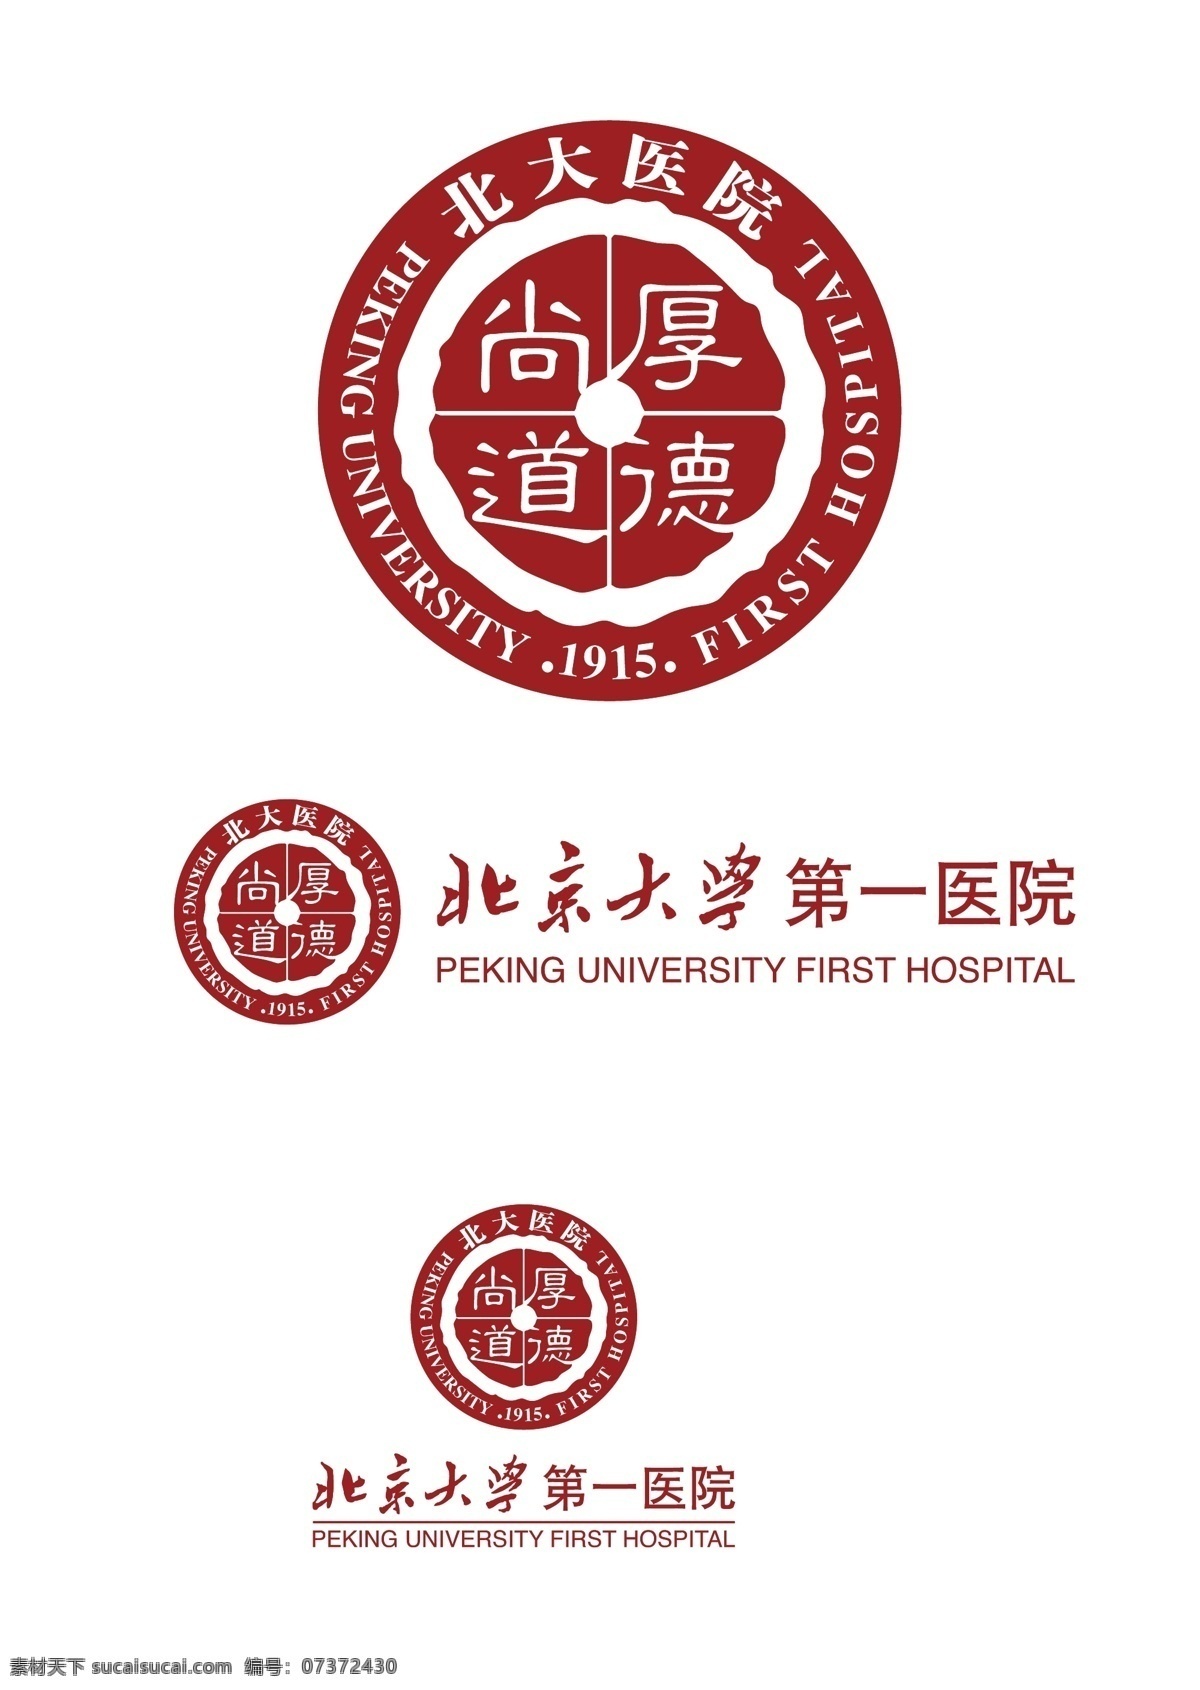 北京大学第一医院 北京 大学 第一 医院 logo 标志图标 其他图标